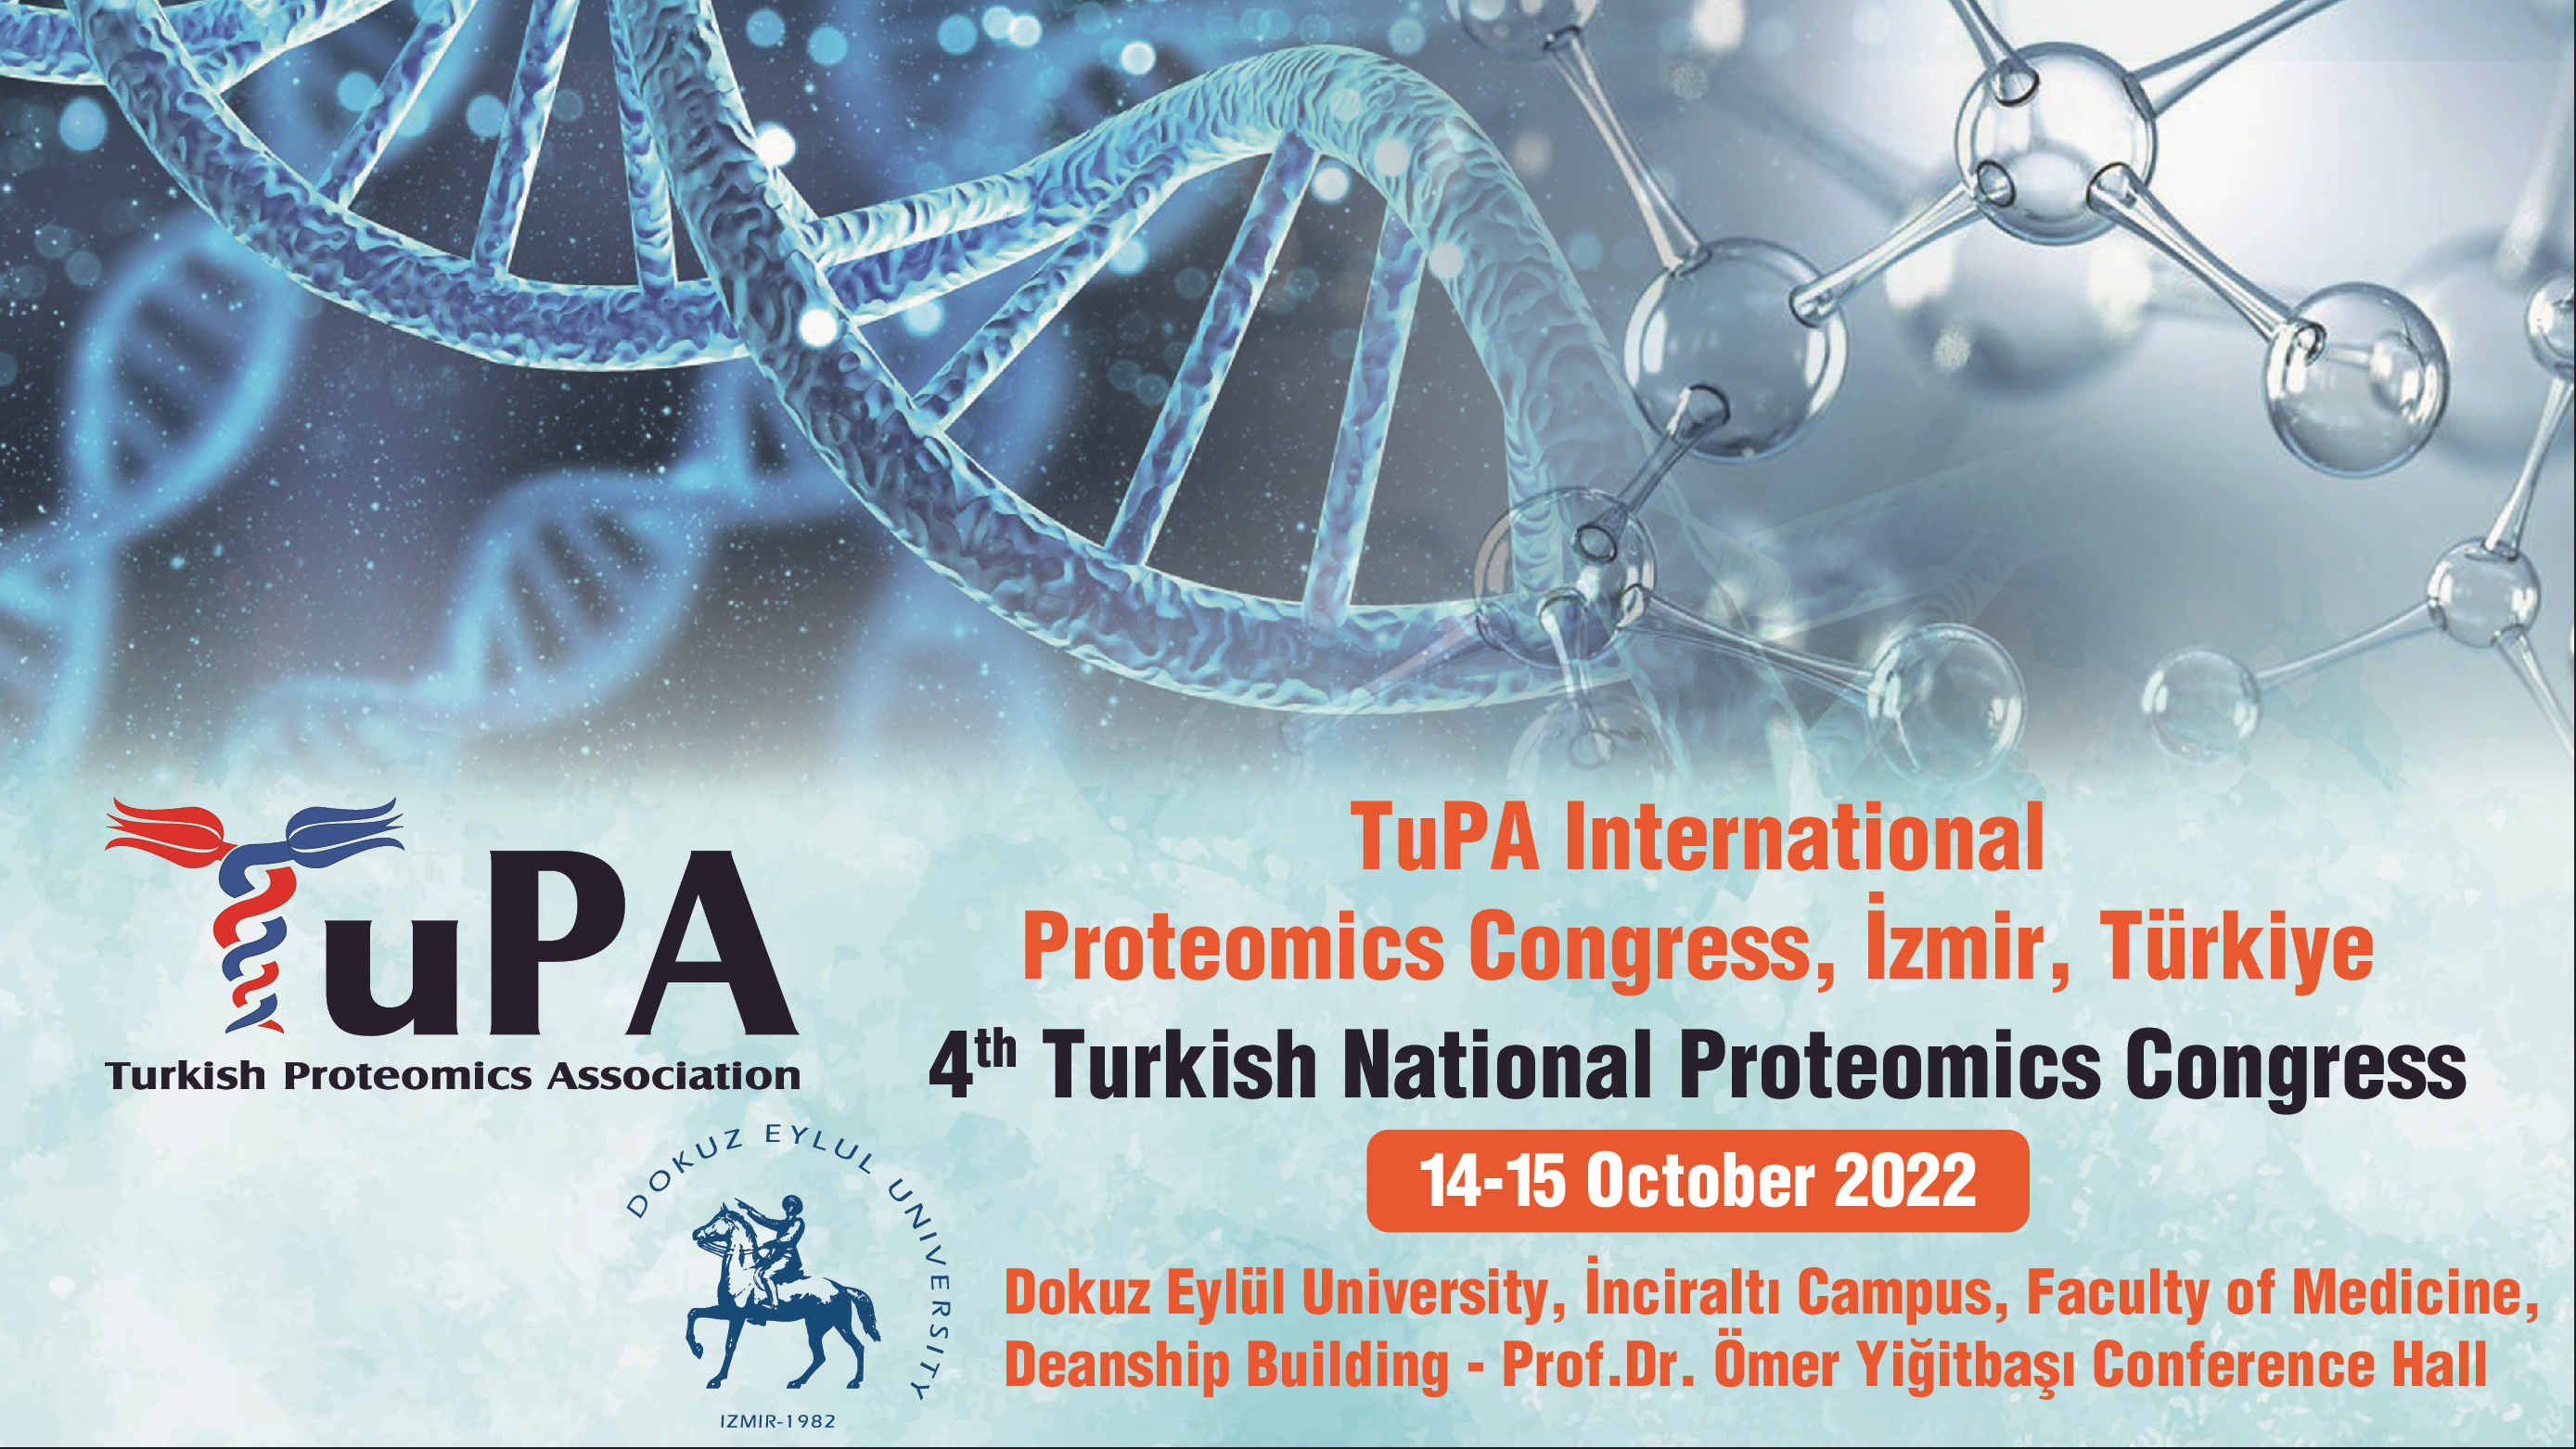 TuPA International Proteomics Congress // 4th Turkish National Proteomics Congress